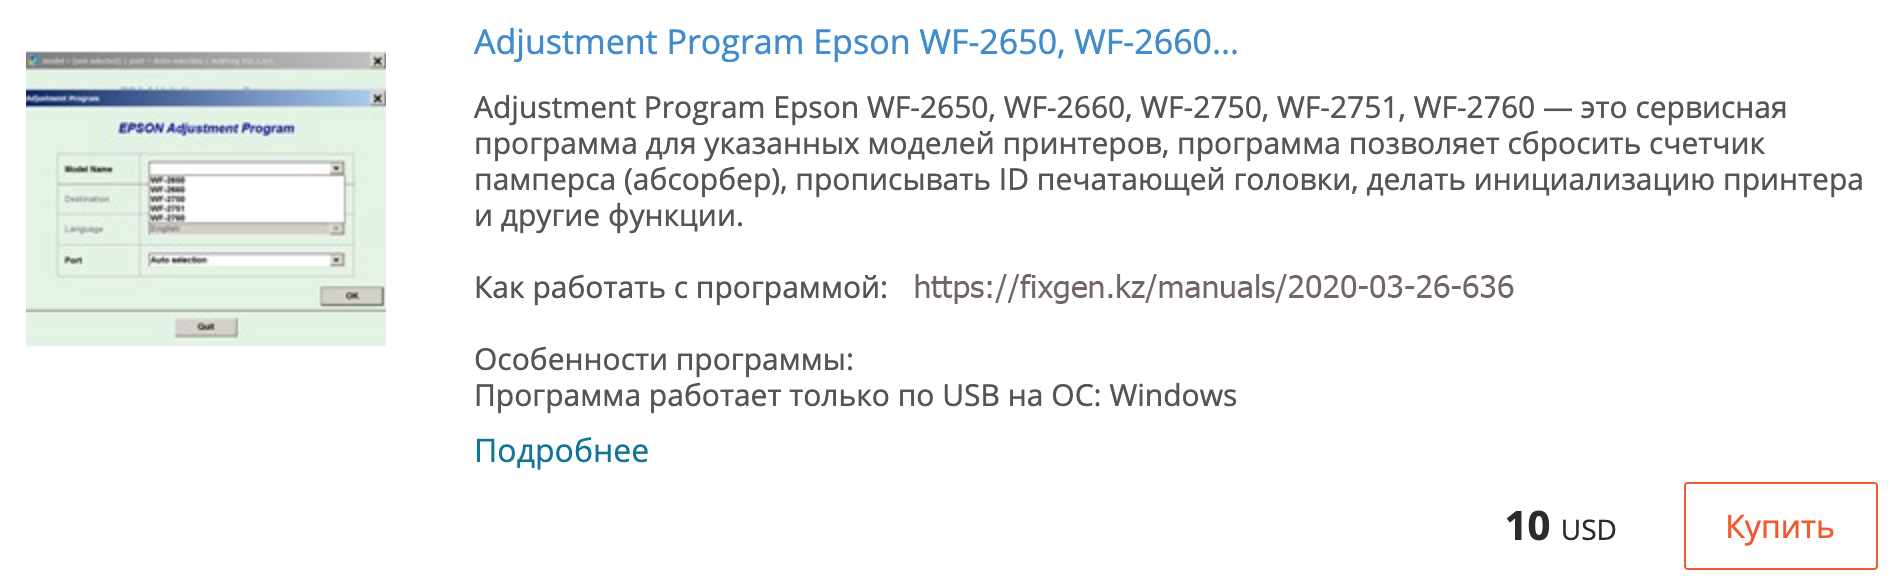 Купить Adjustment program Epson WF-2650, WF-2660, WF-2750, WF-2751, WF-2760